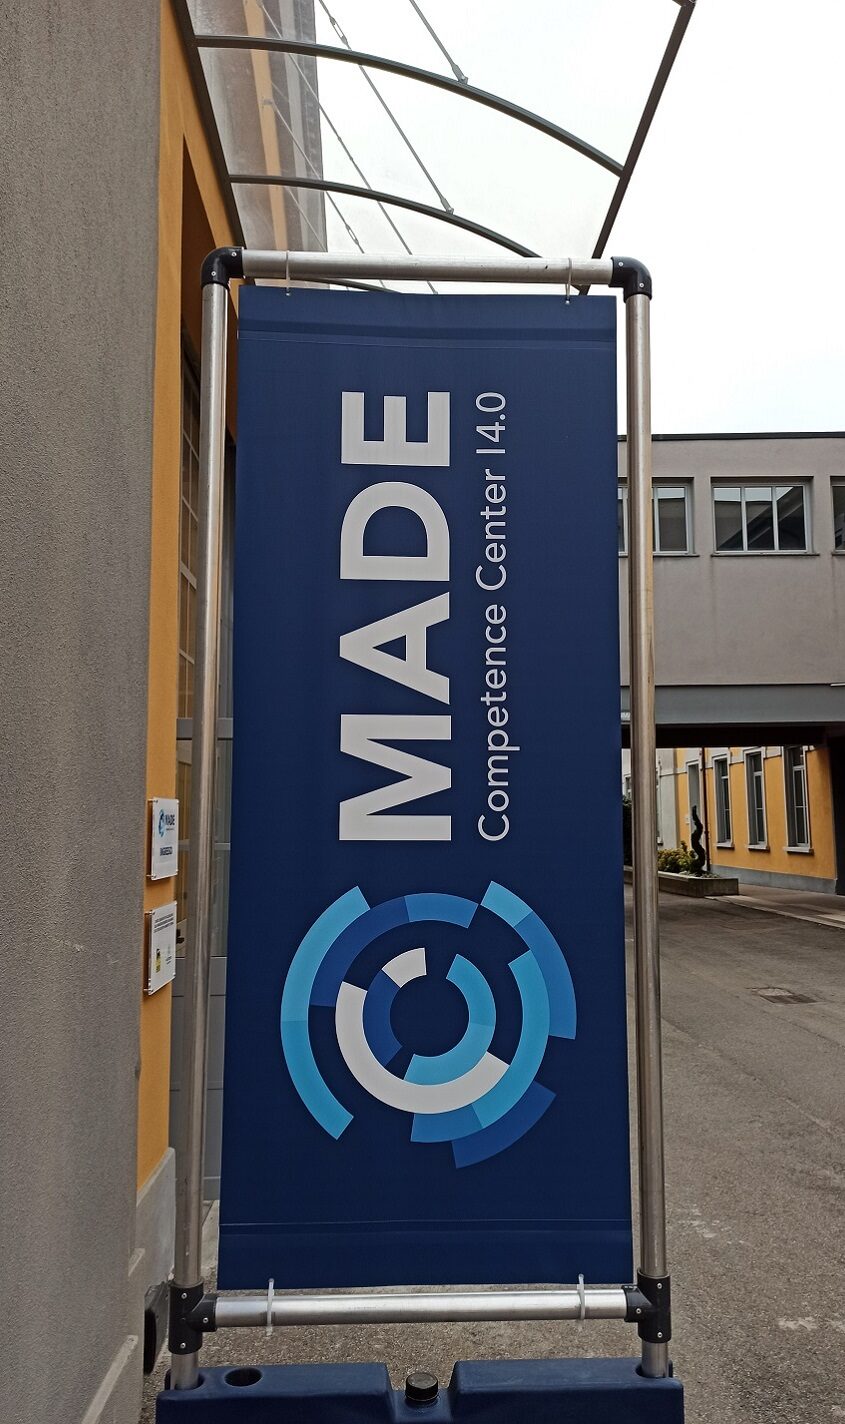 MADE-Politecnico di Milano 4.0 Competence center